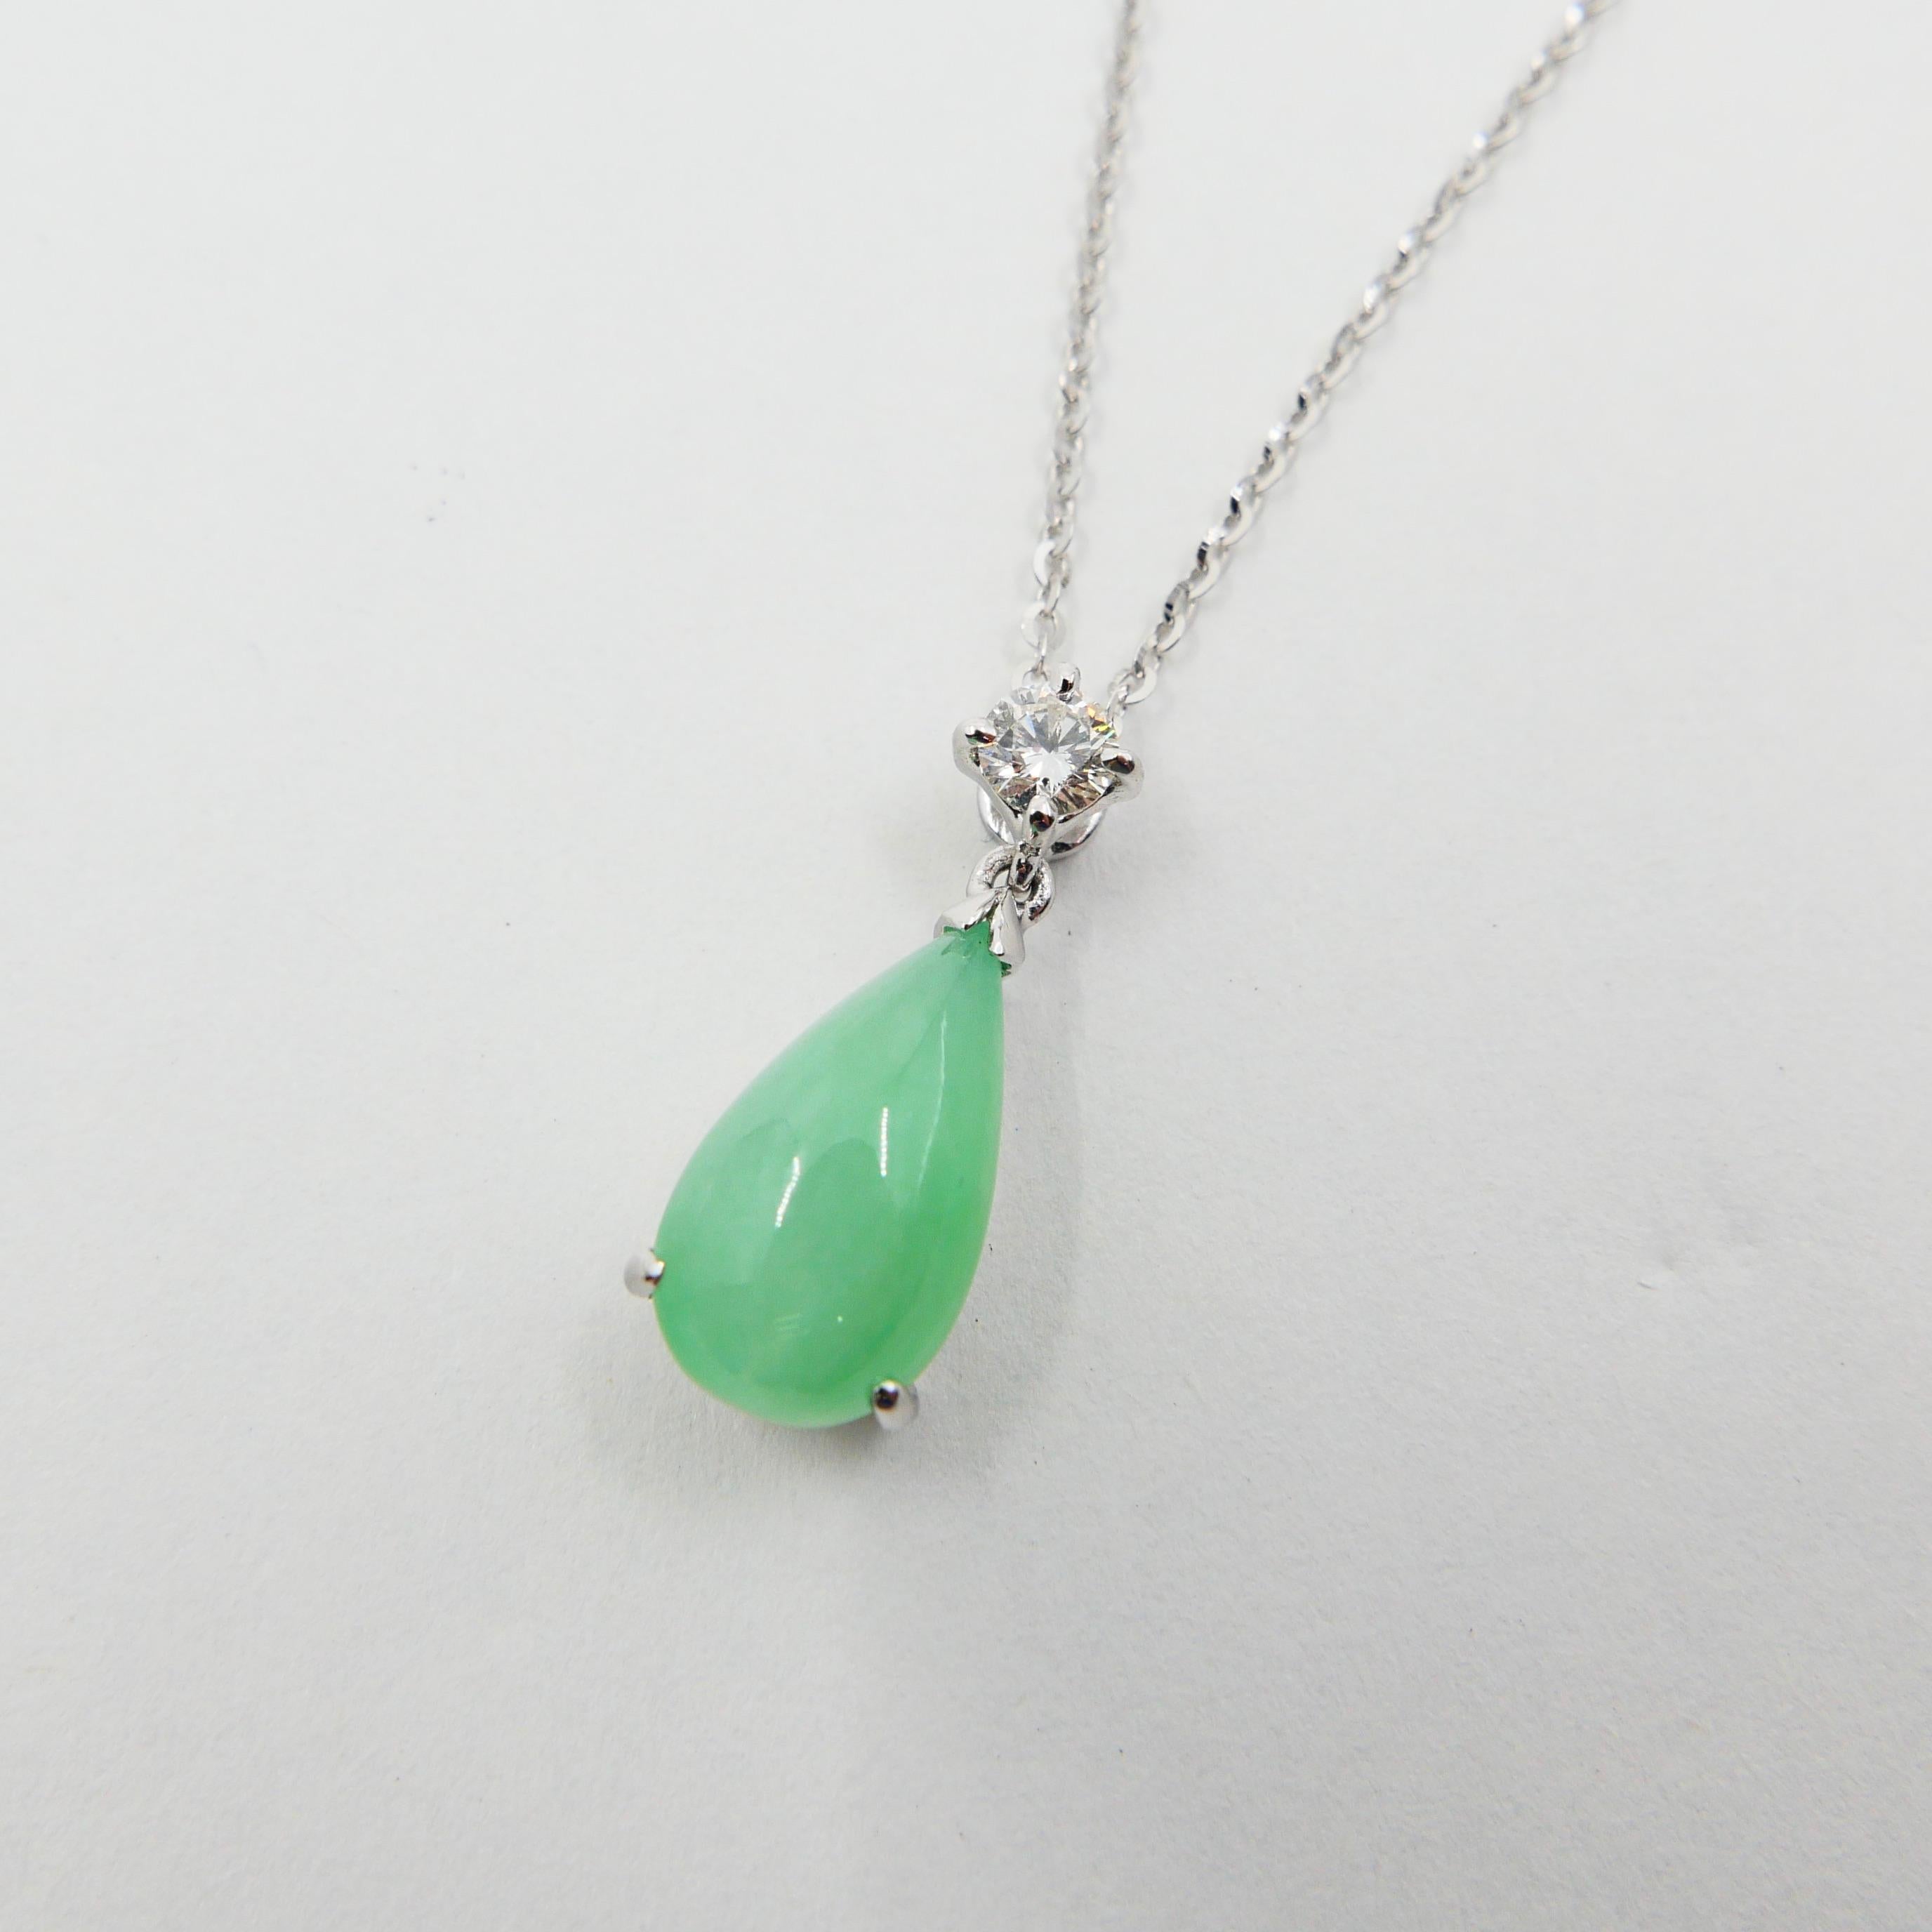 Pear Cut Certified Type A Jadeite Jade Diamond Pendant Drop Necklace, Light Green Color